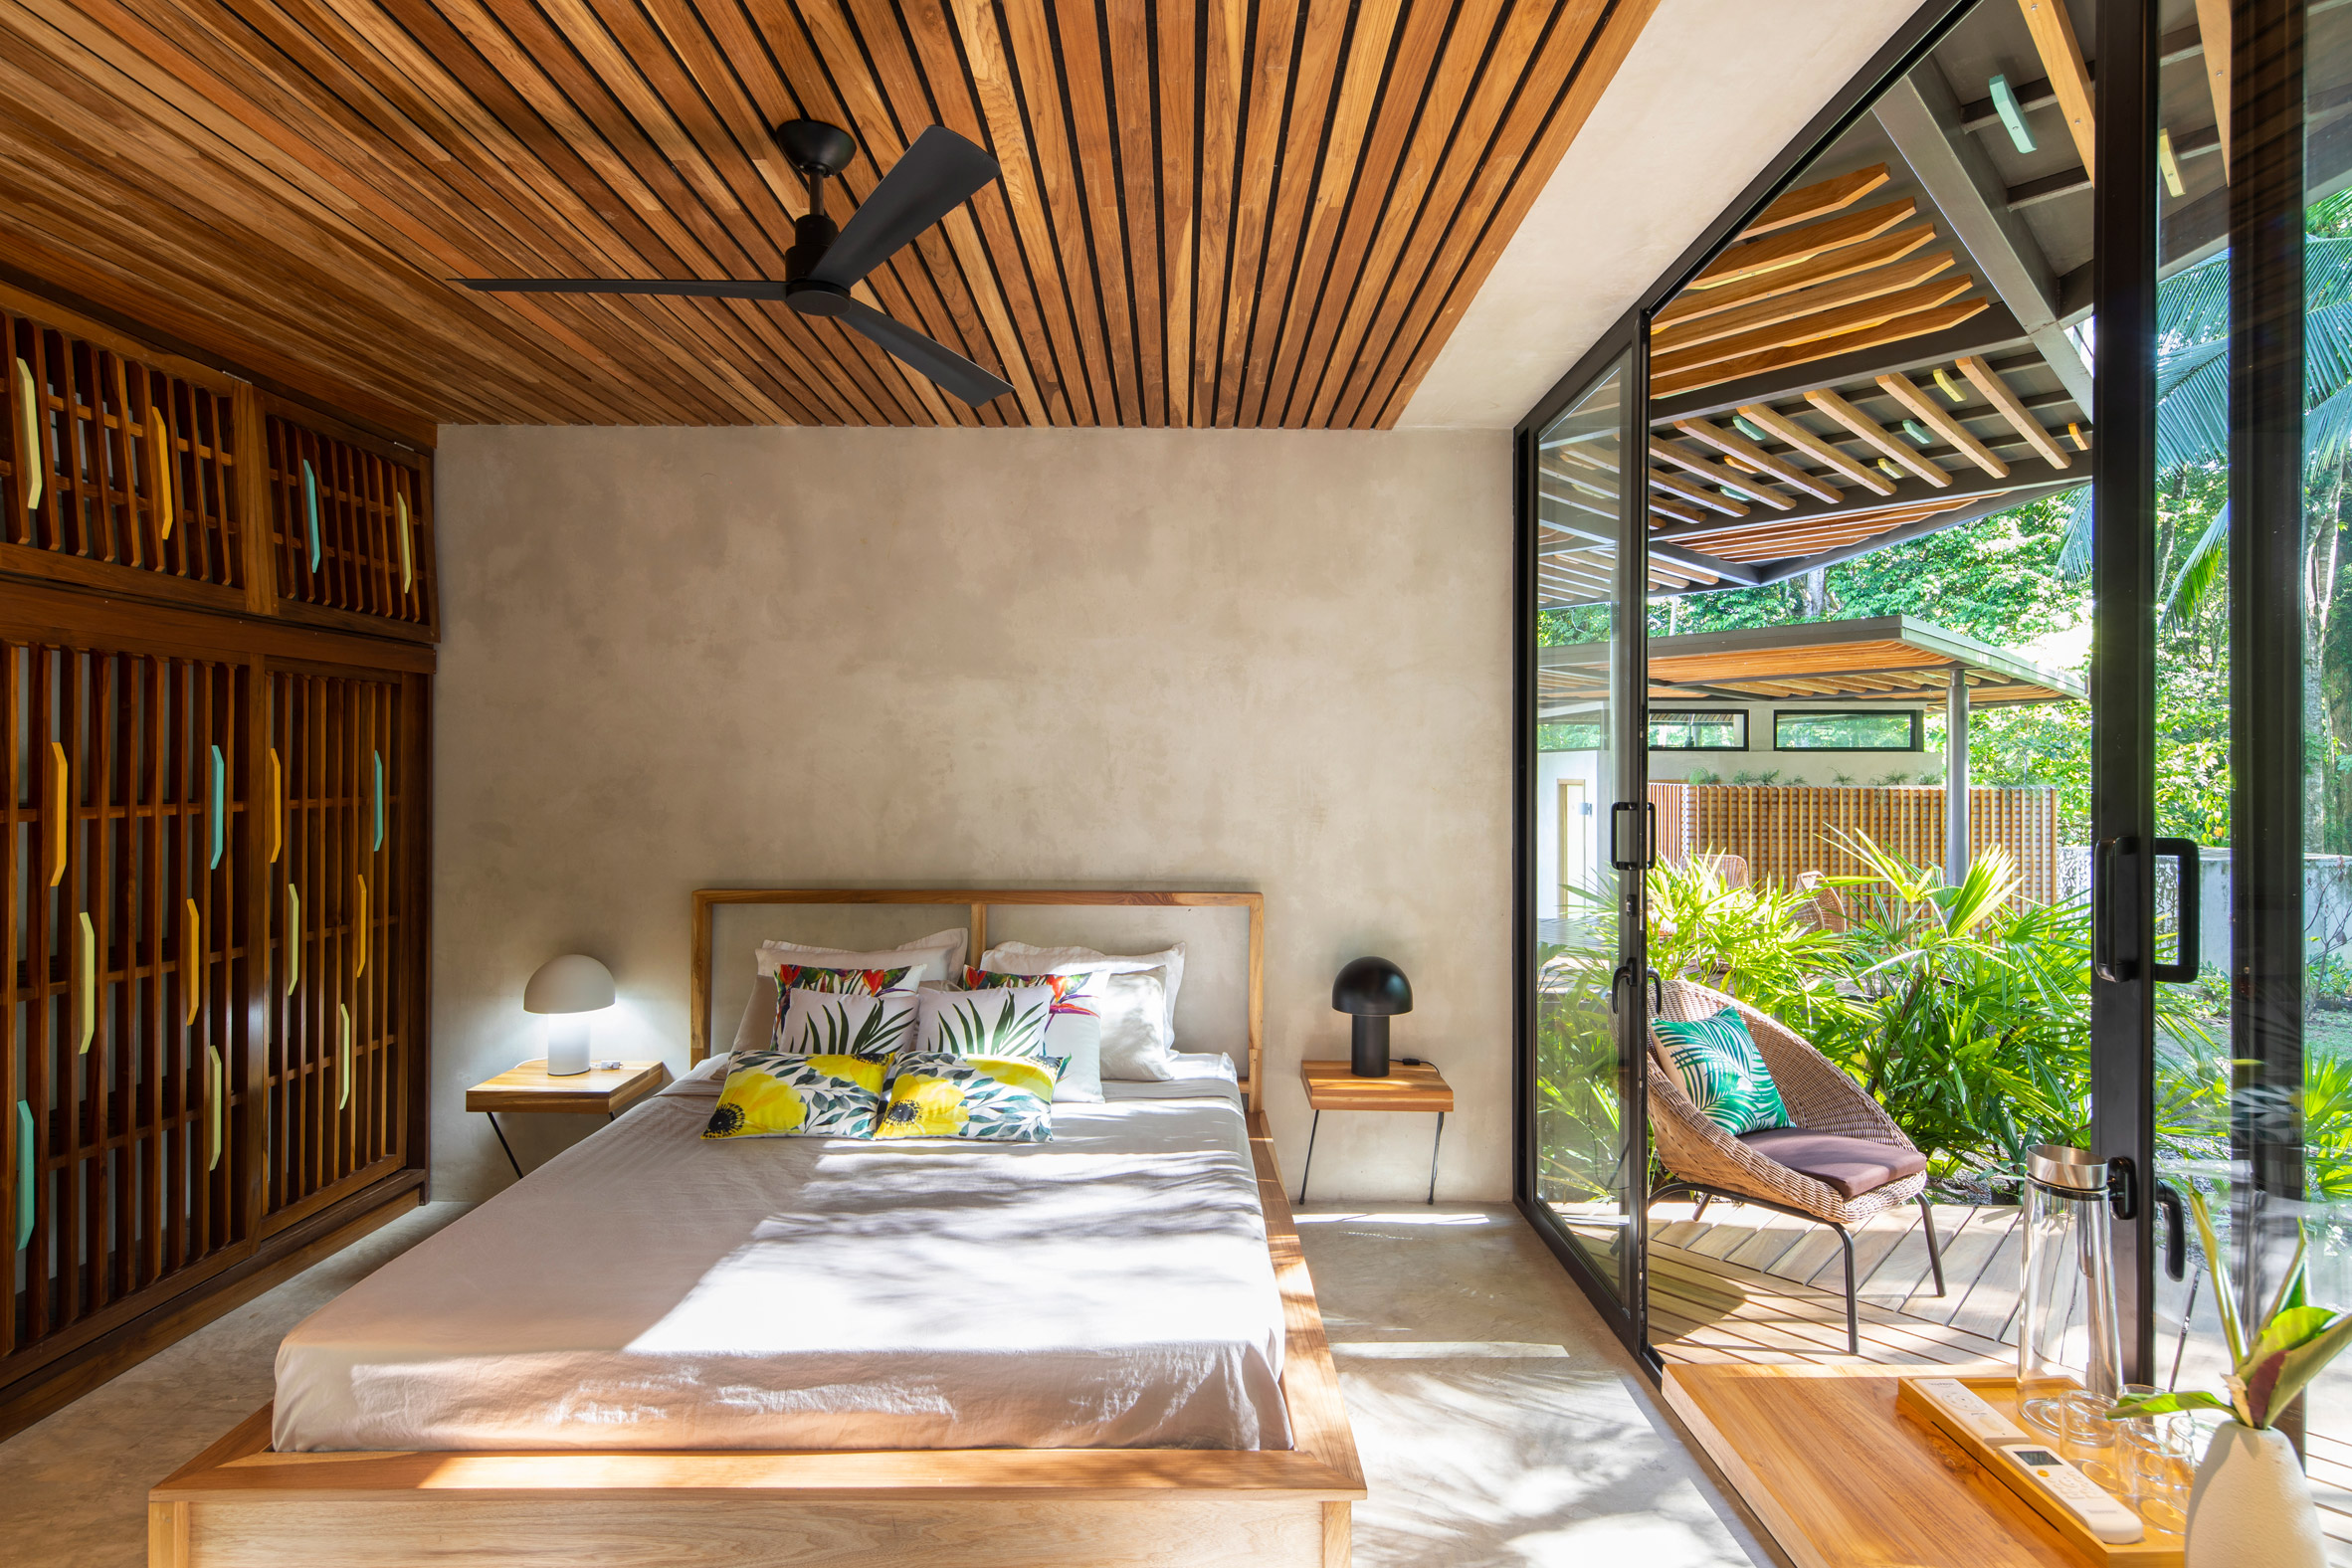 Studio Saxe weaves Caribbean Courtyard Villa into a Costa Rican jungle